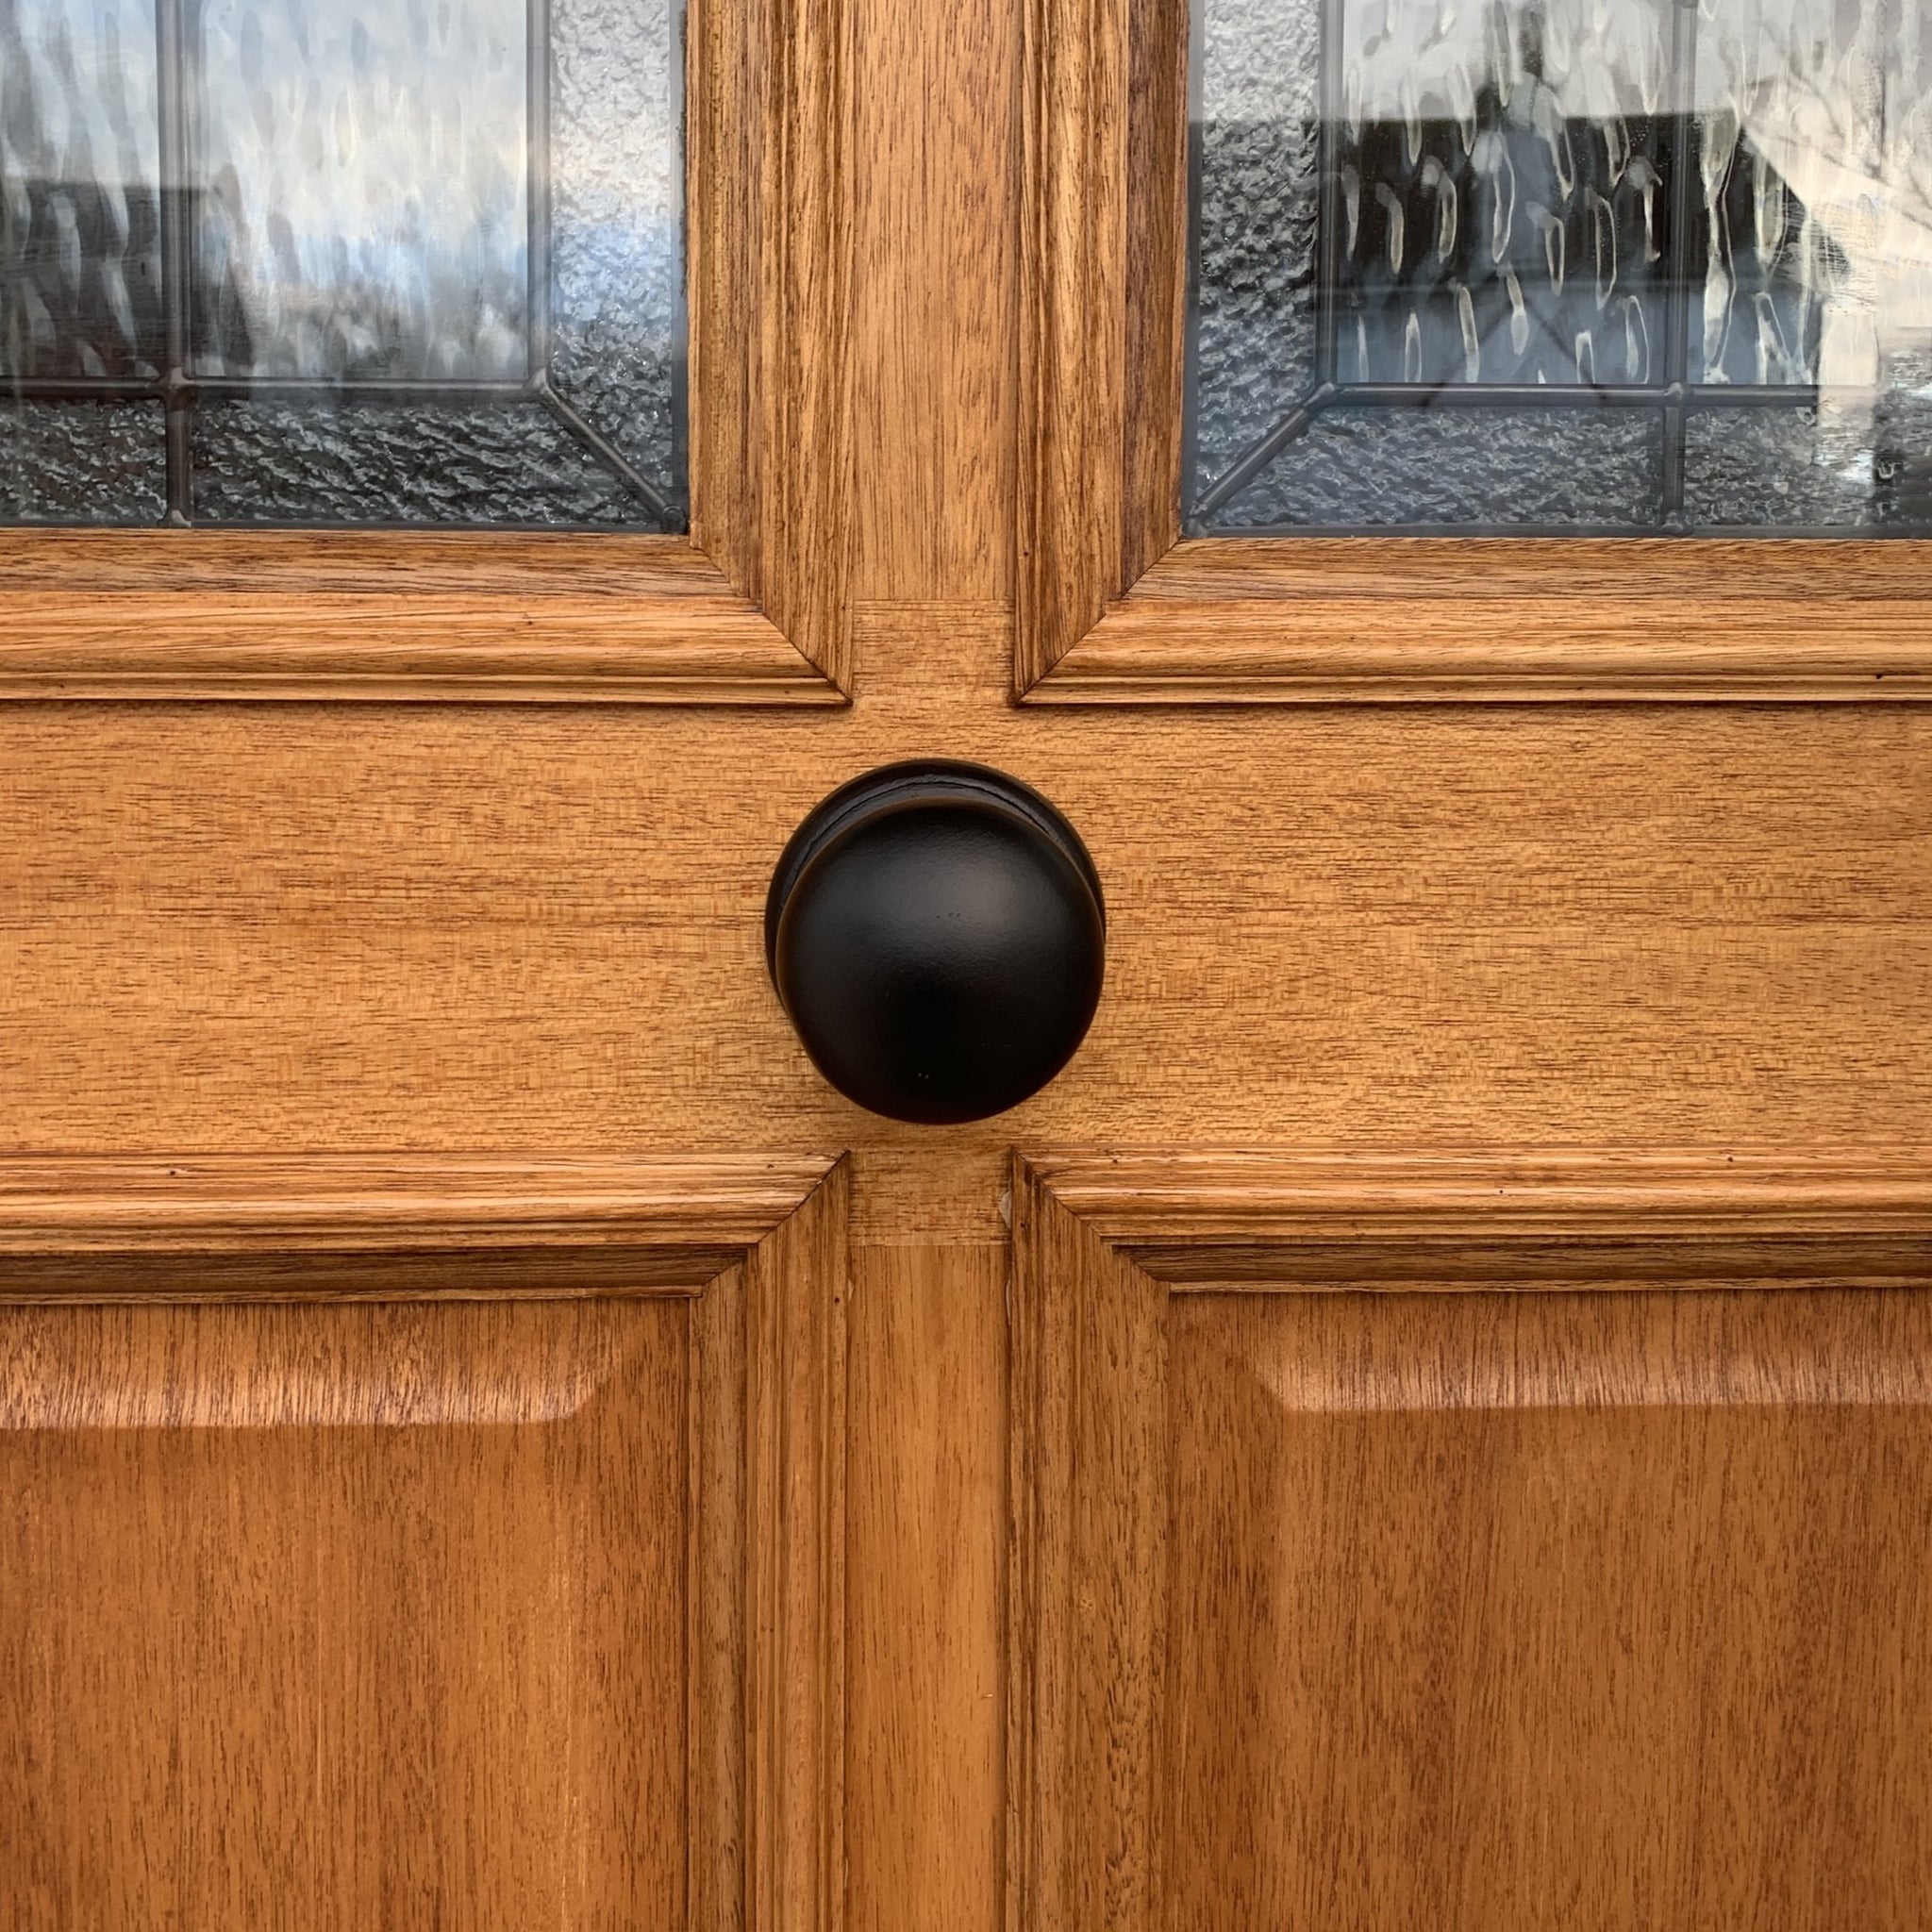 Black front door knob SHOW